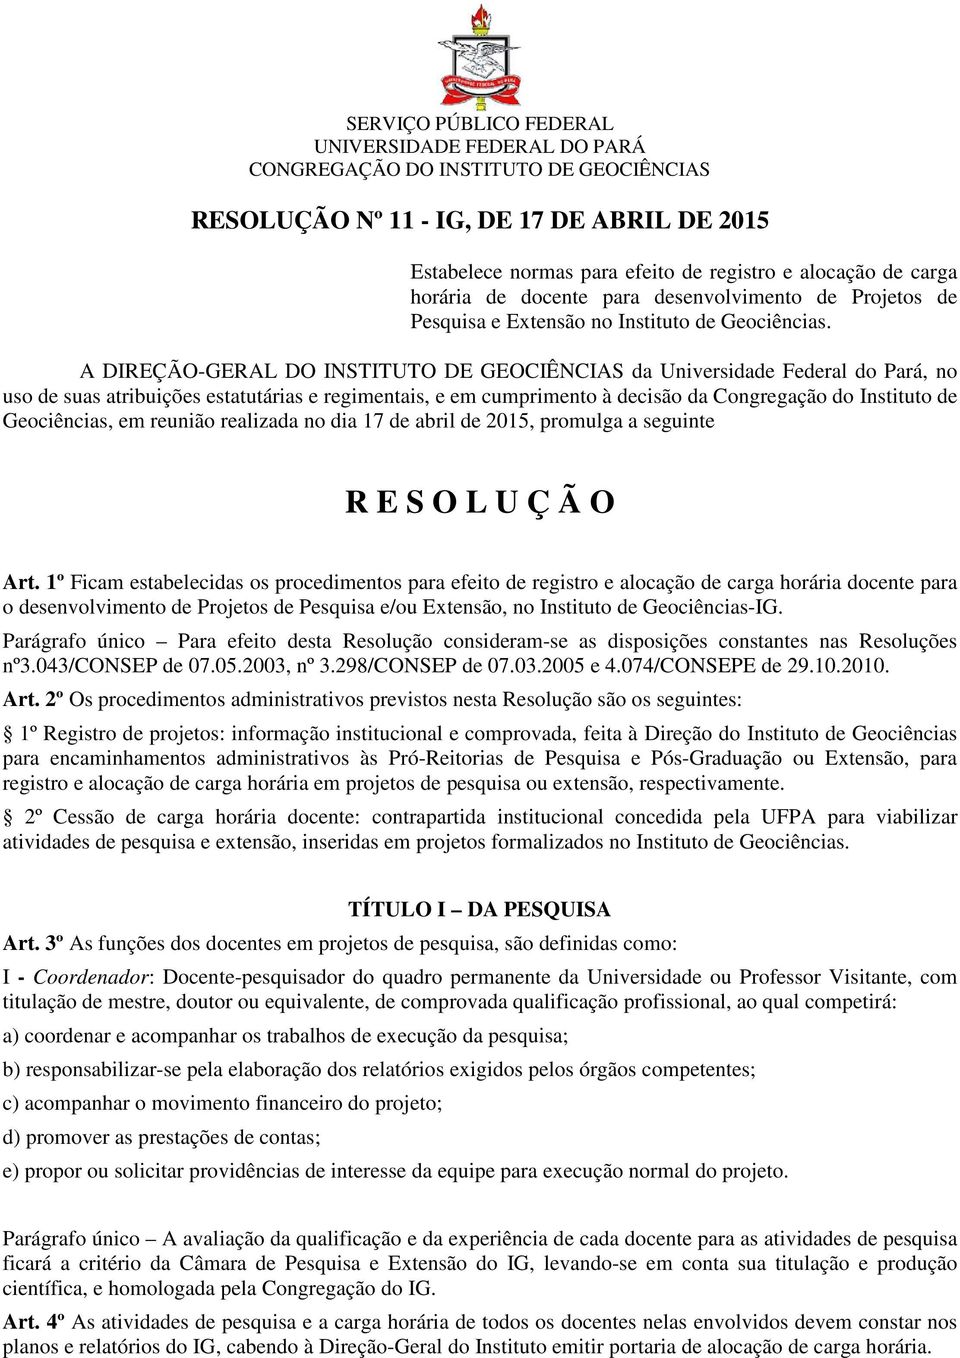 A DIREÇÃO-GERAL DO INSTITUTO DE GEOCIÊNCIAS da Universidade Federal do Pará, no uso de suas atribuições estatutárias e regimentais, e em cumprimento à decisão da Congregação do Instituto de